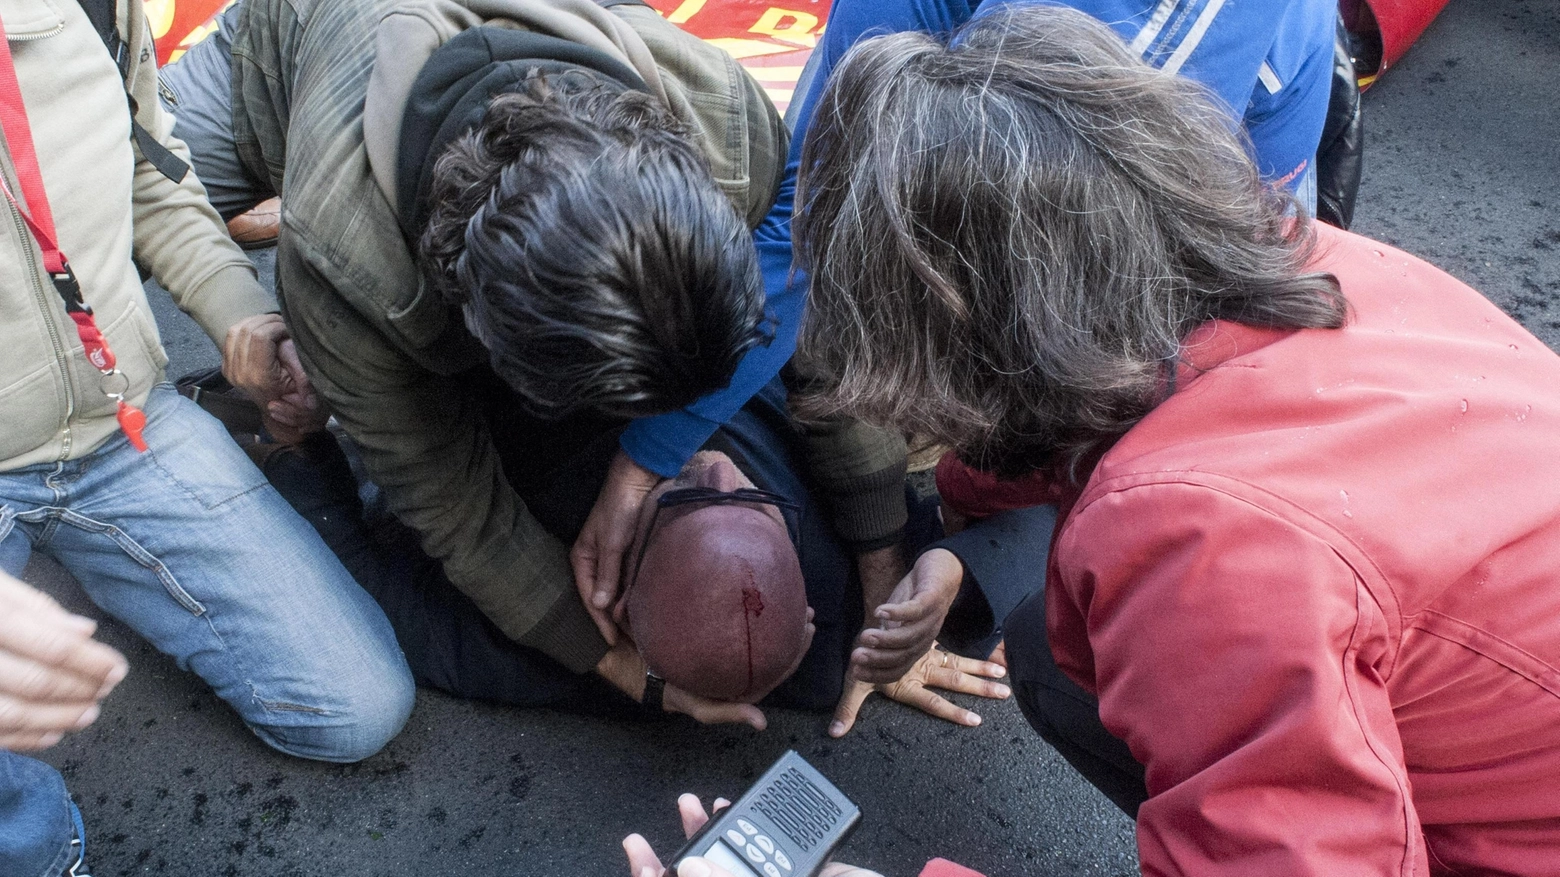 Roma, operai e sindacalisti feriti durante il corteo (Foto Ansa)